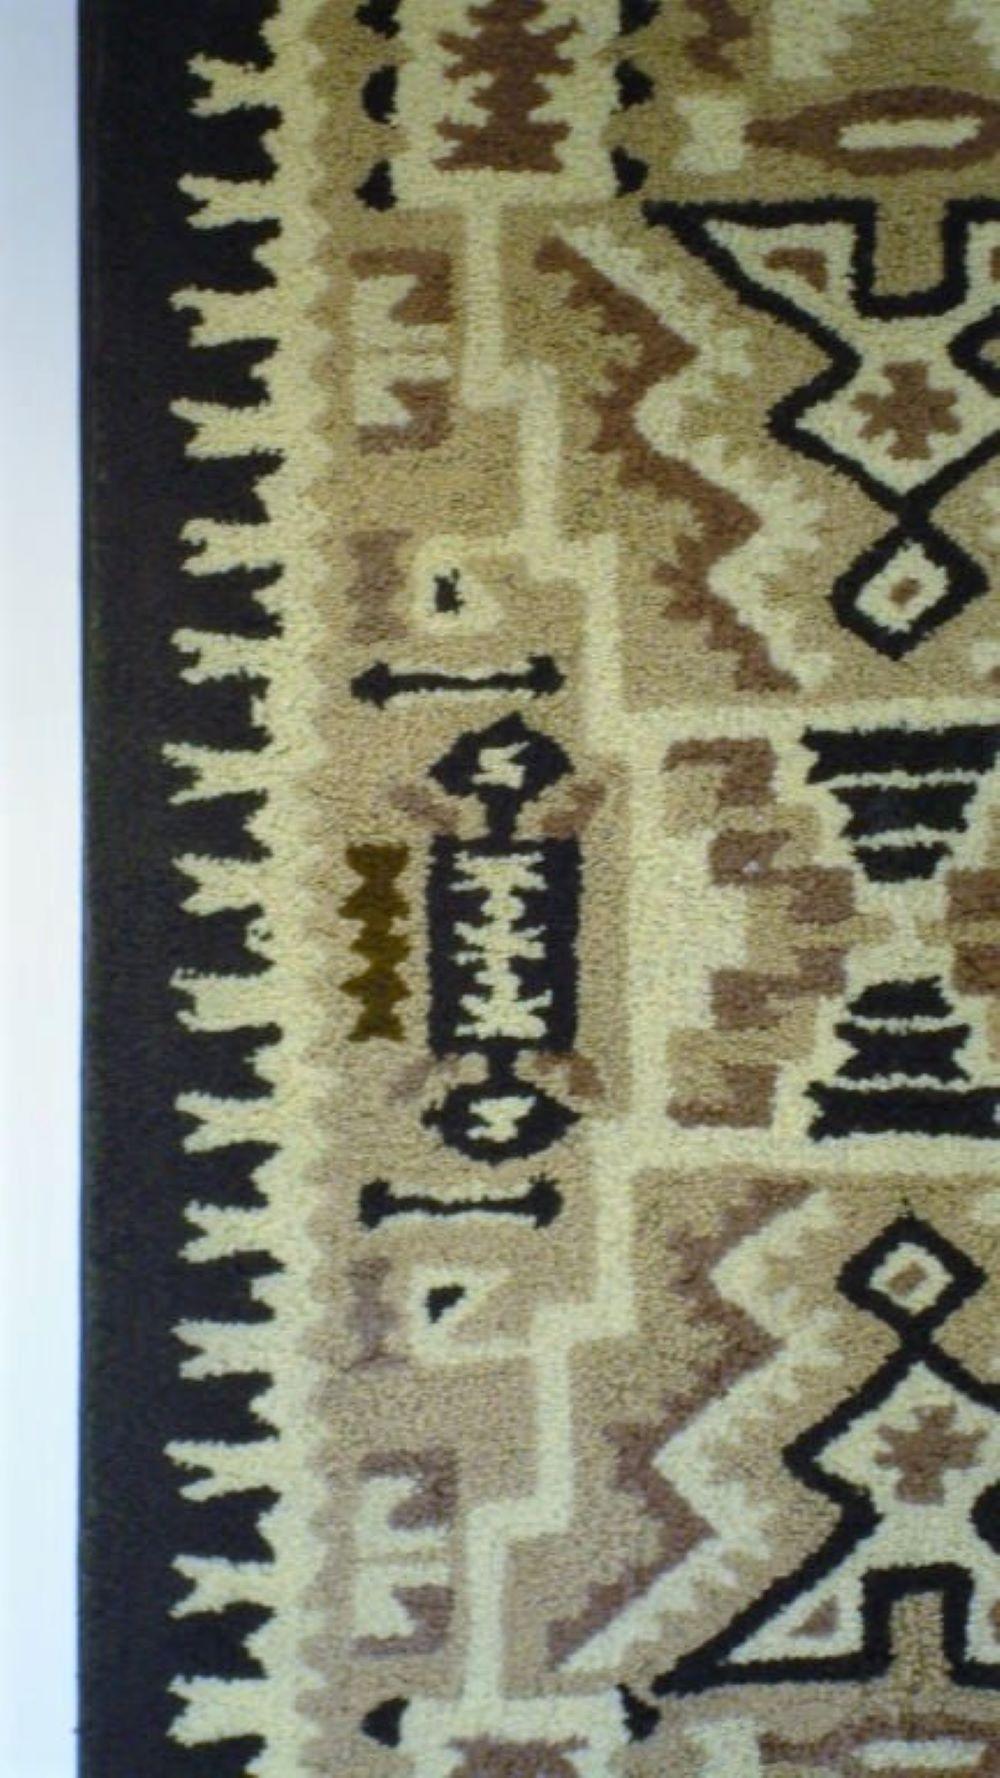 Amerikanischer handgehäkelter Teppich mit indianischem Muster auf einem Spannrahmen, der auf schwarzem Leinen genäht ist. Wunderschönes geometrisches Muster, guter Zustand. Kommt im mittleren Westen vor.